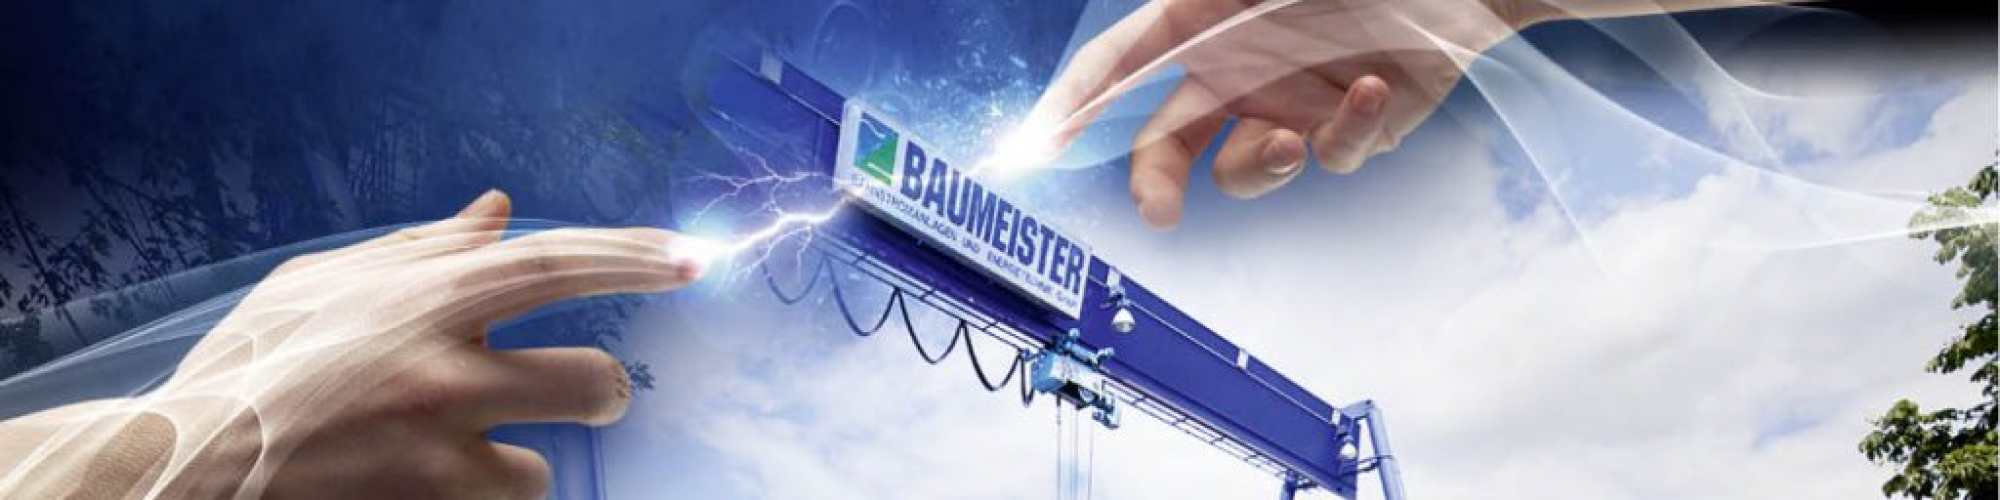 BAUMEISTER Bahnstromanlagen - Energietechnik GmbH